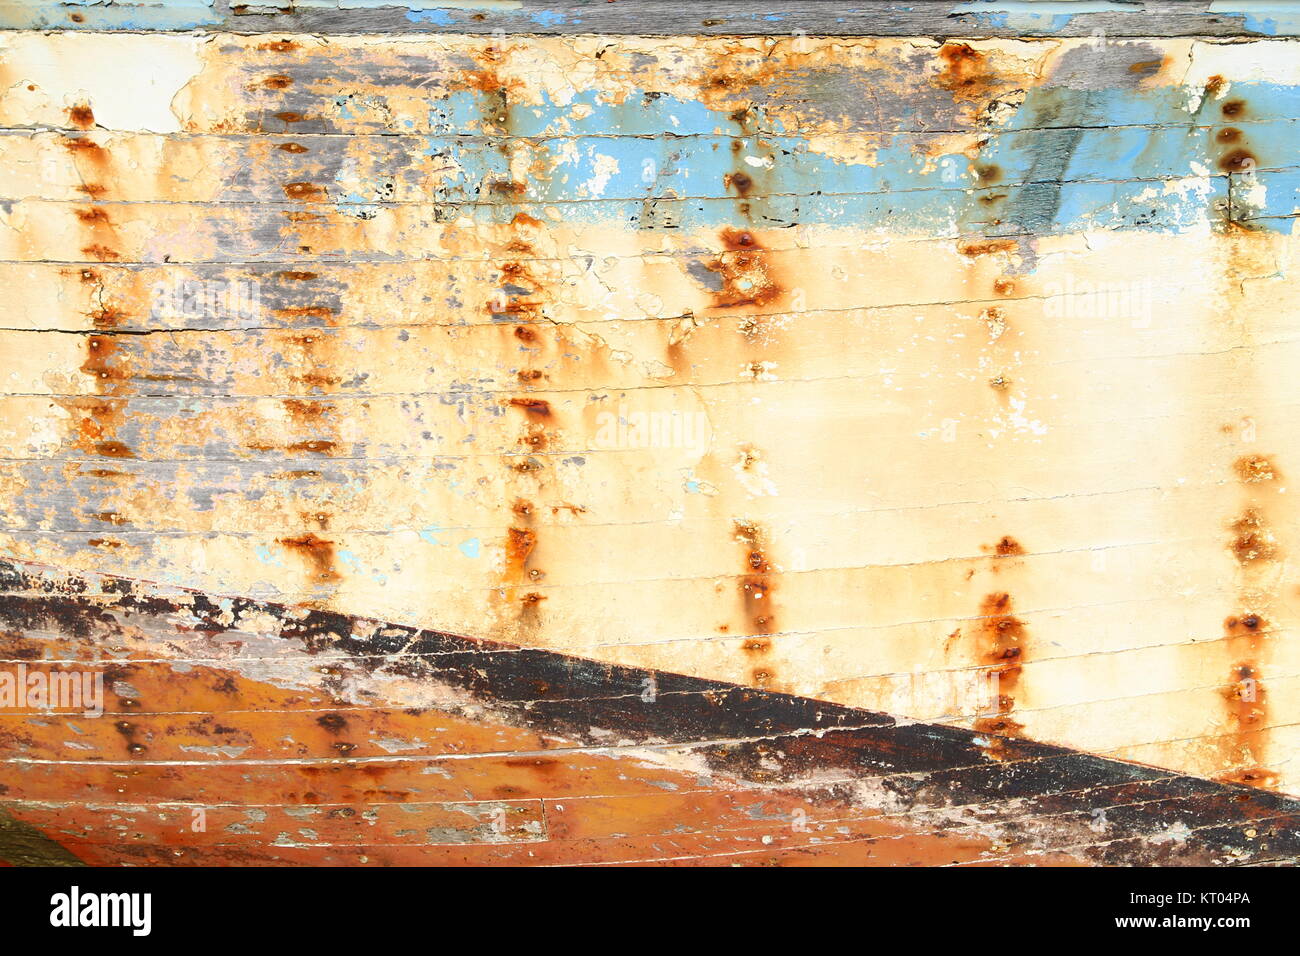 Hintergrund: farbige, verwitterte Planken eines Schiffsracks Stockfoto